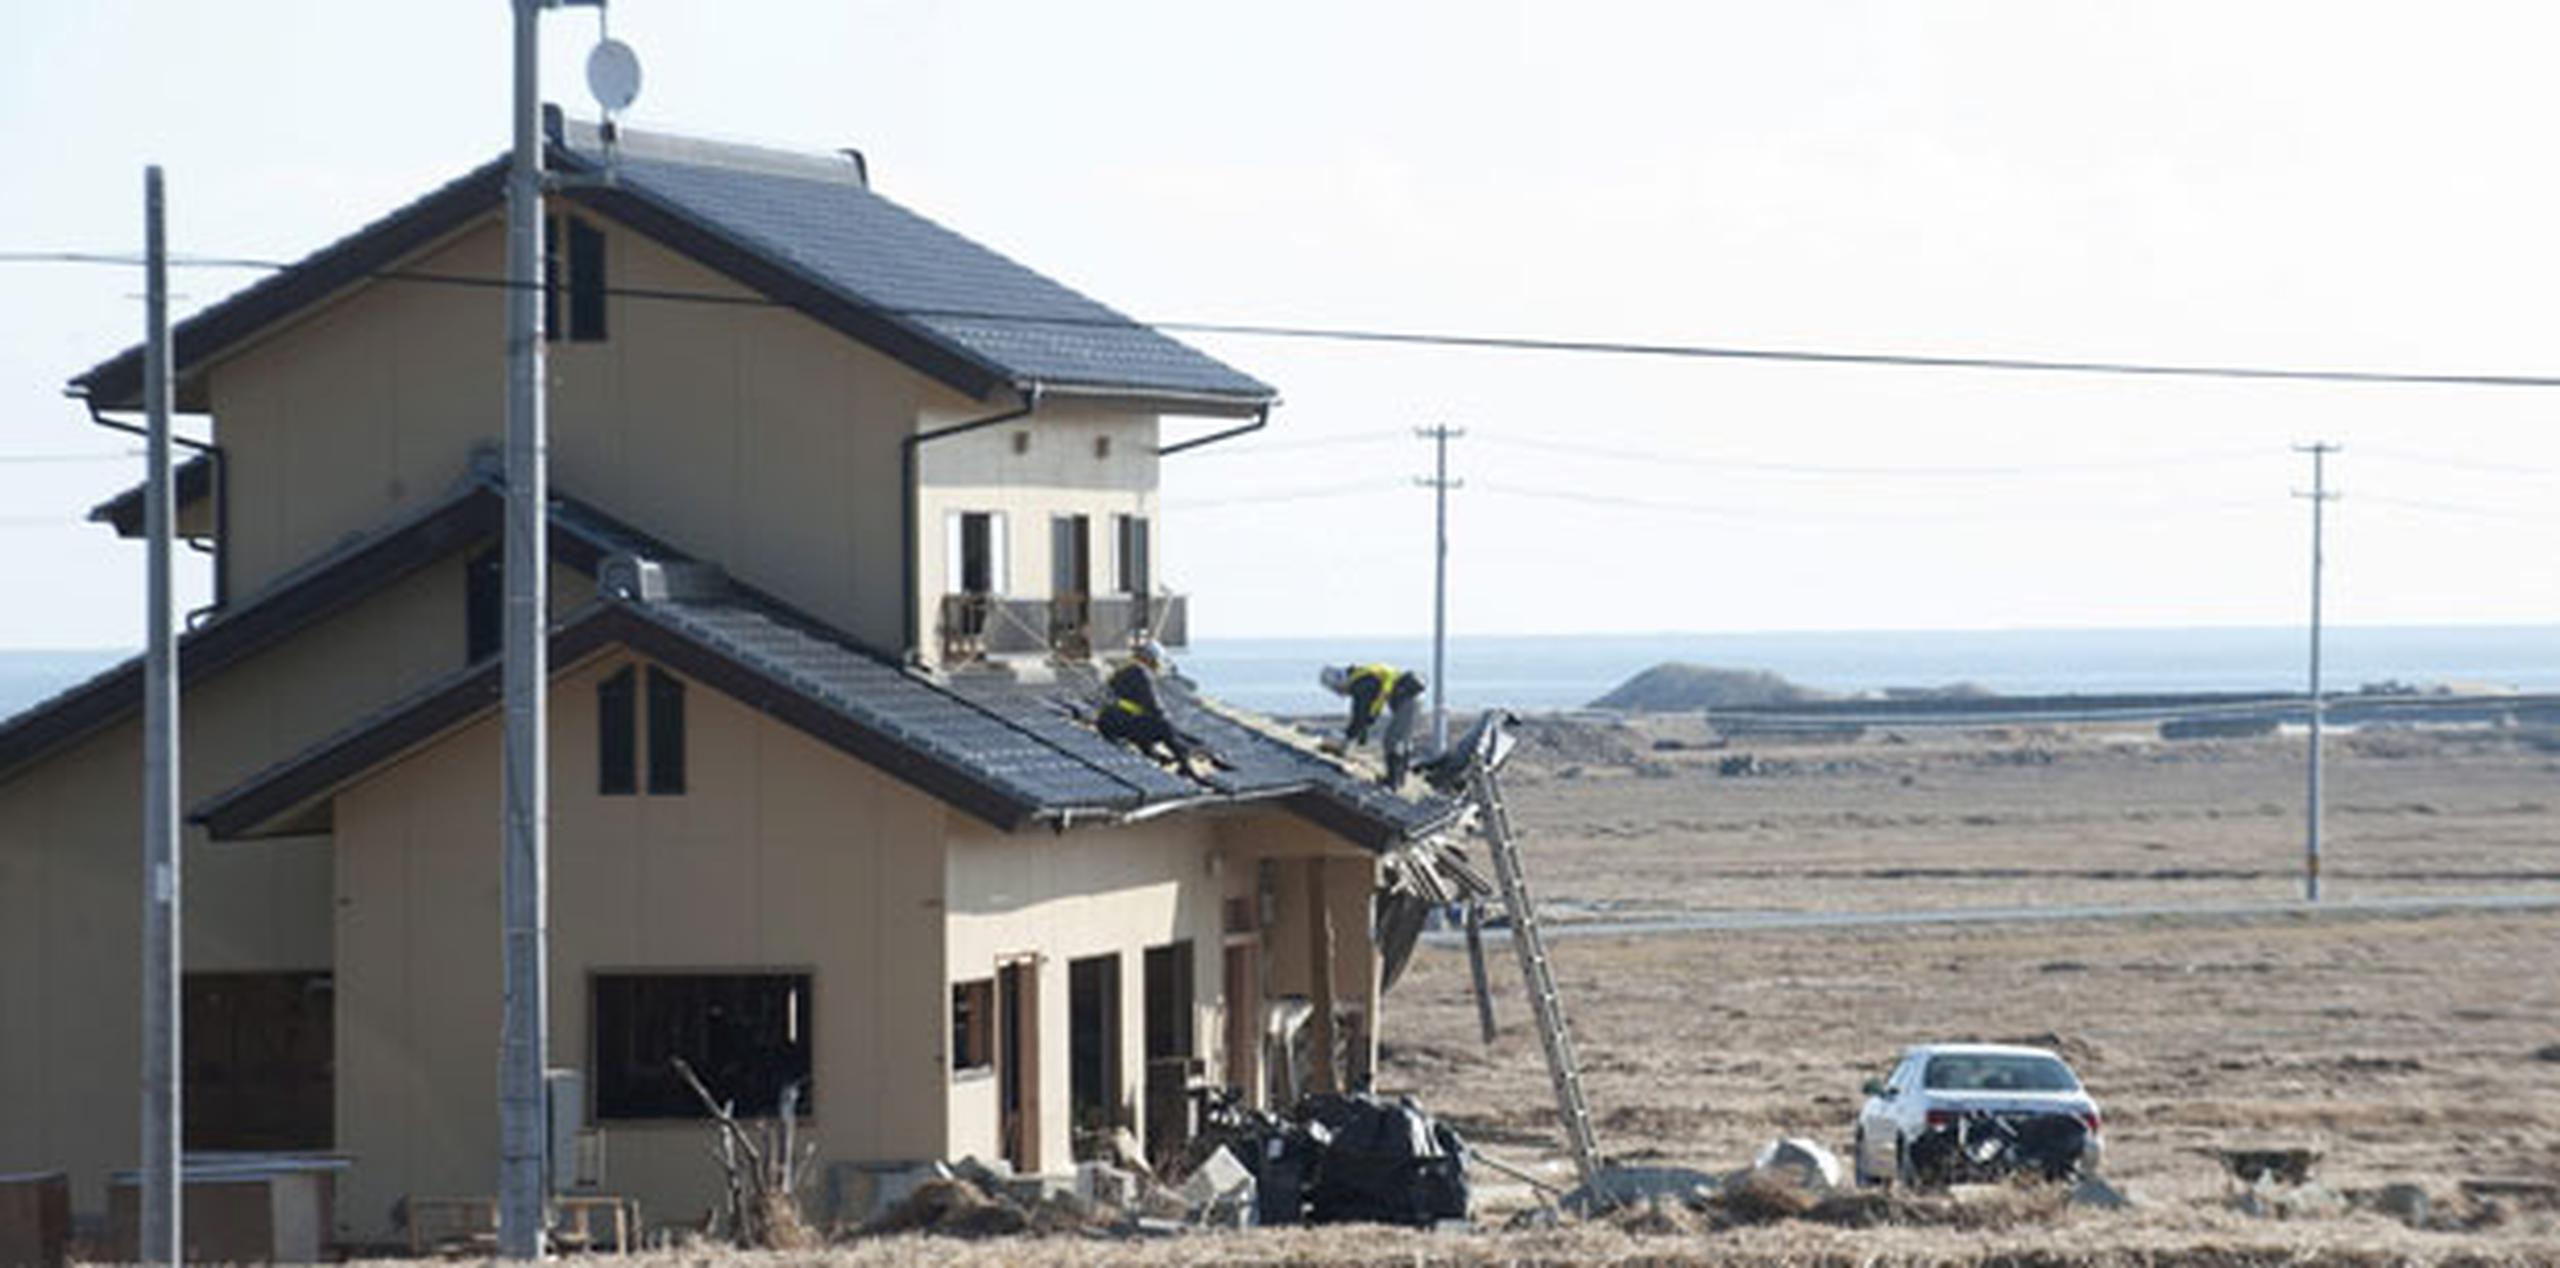 43 vecinos que han podido retornar a sus casas temporalmente en el pueblo de Namie han informado de destrozos provocados por los jabalíes. (EFE)